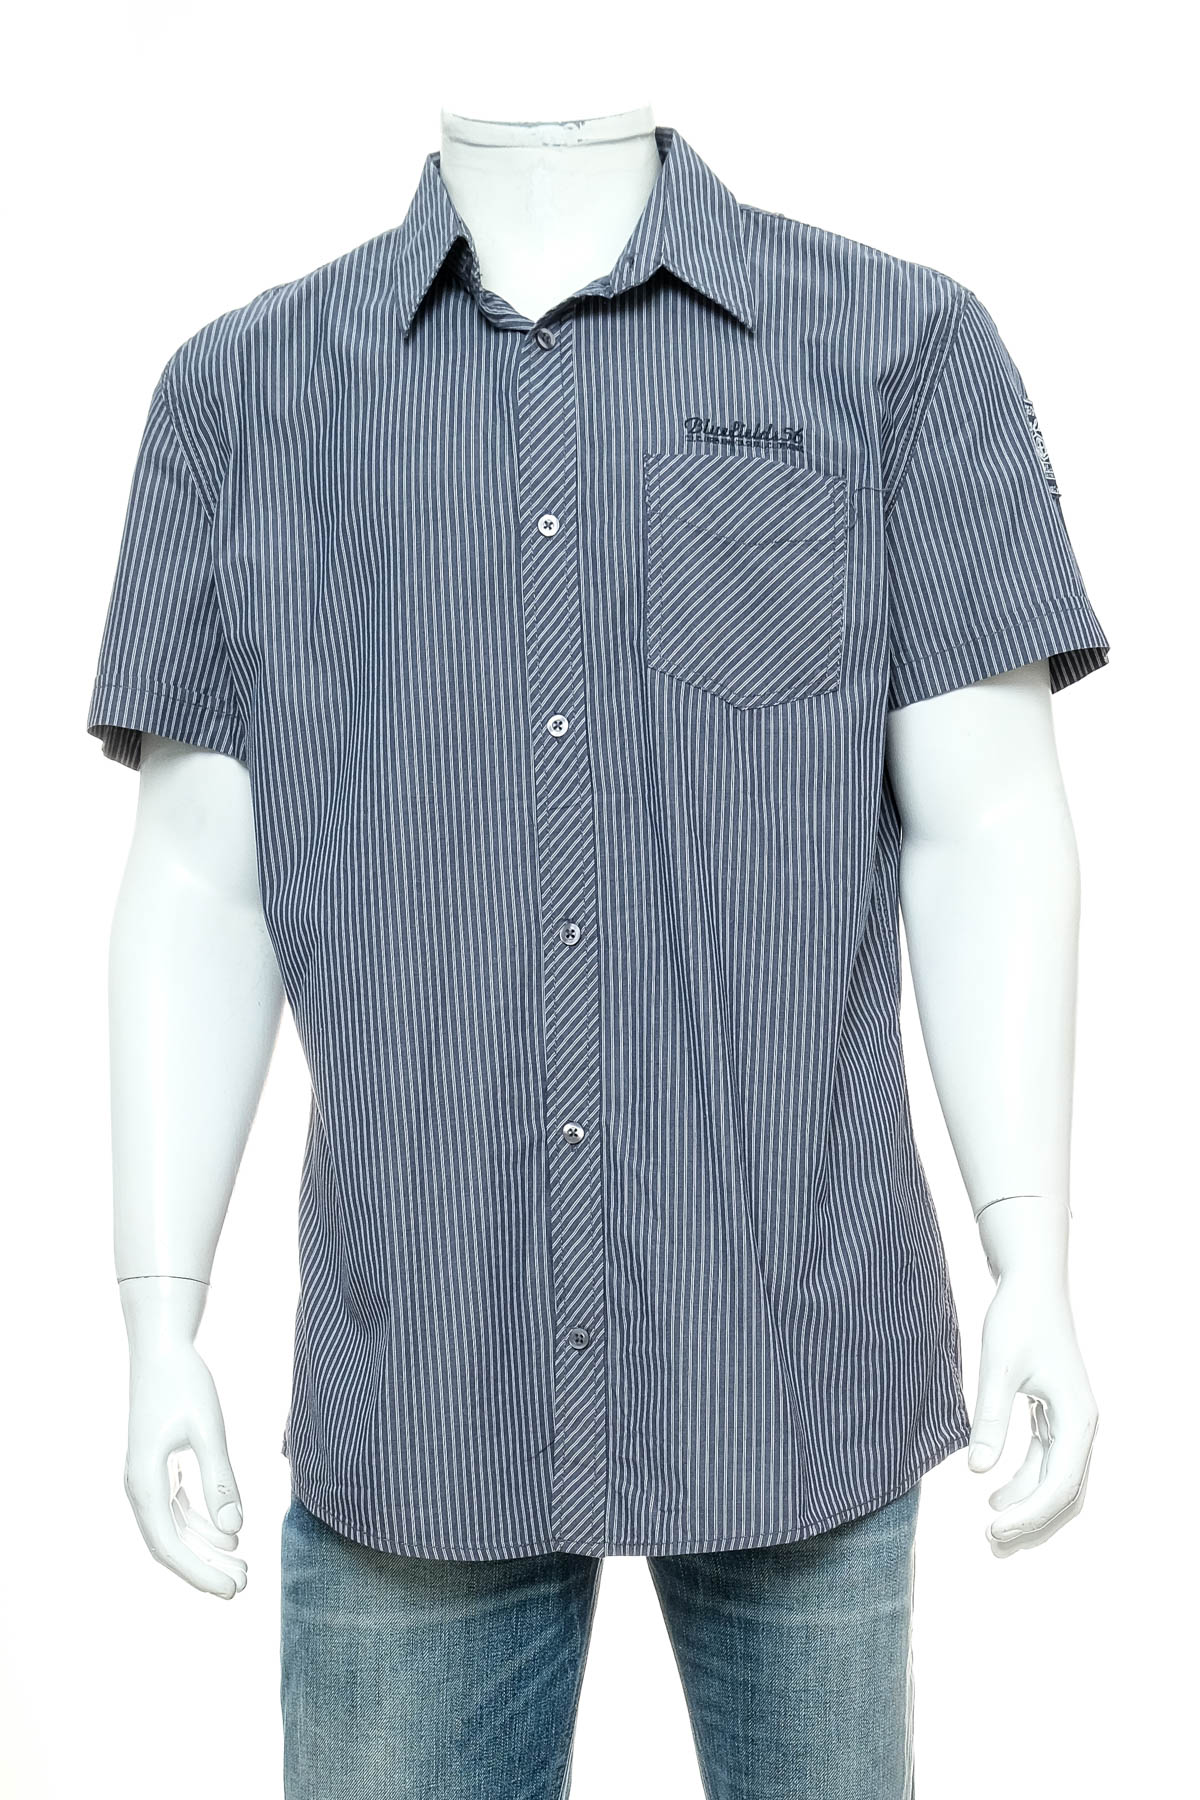 Ανδρικό πουκάμισο - Bluefields - 0